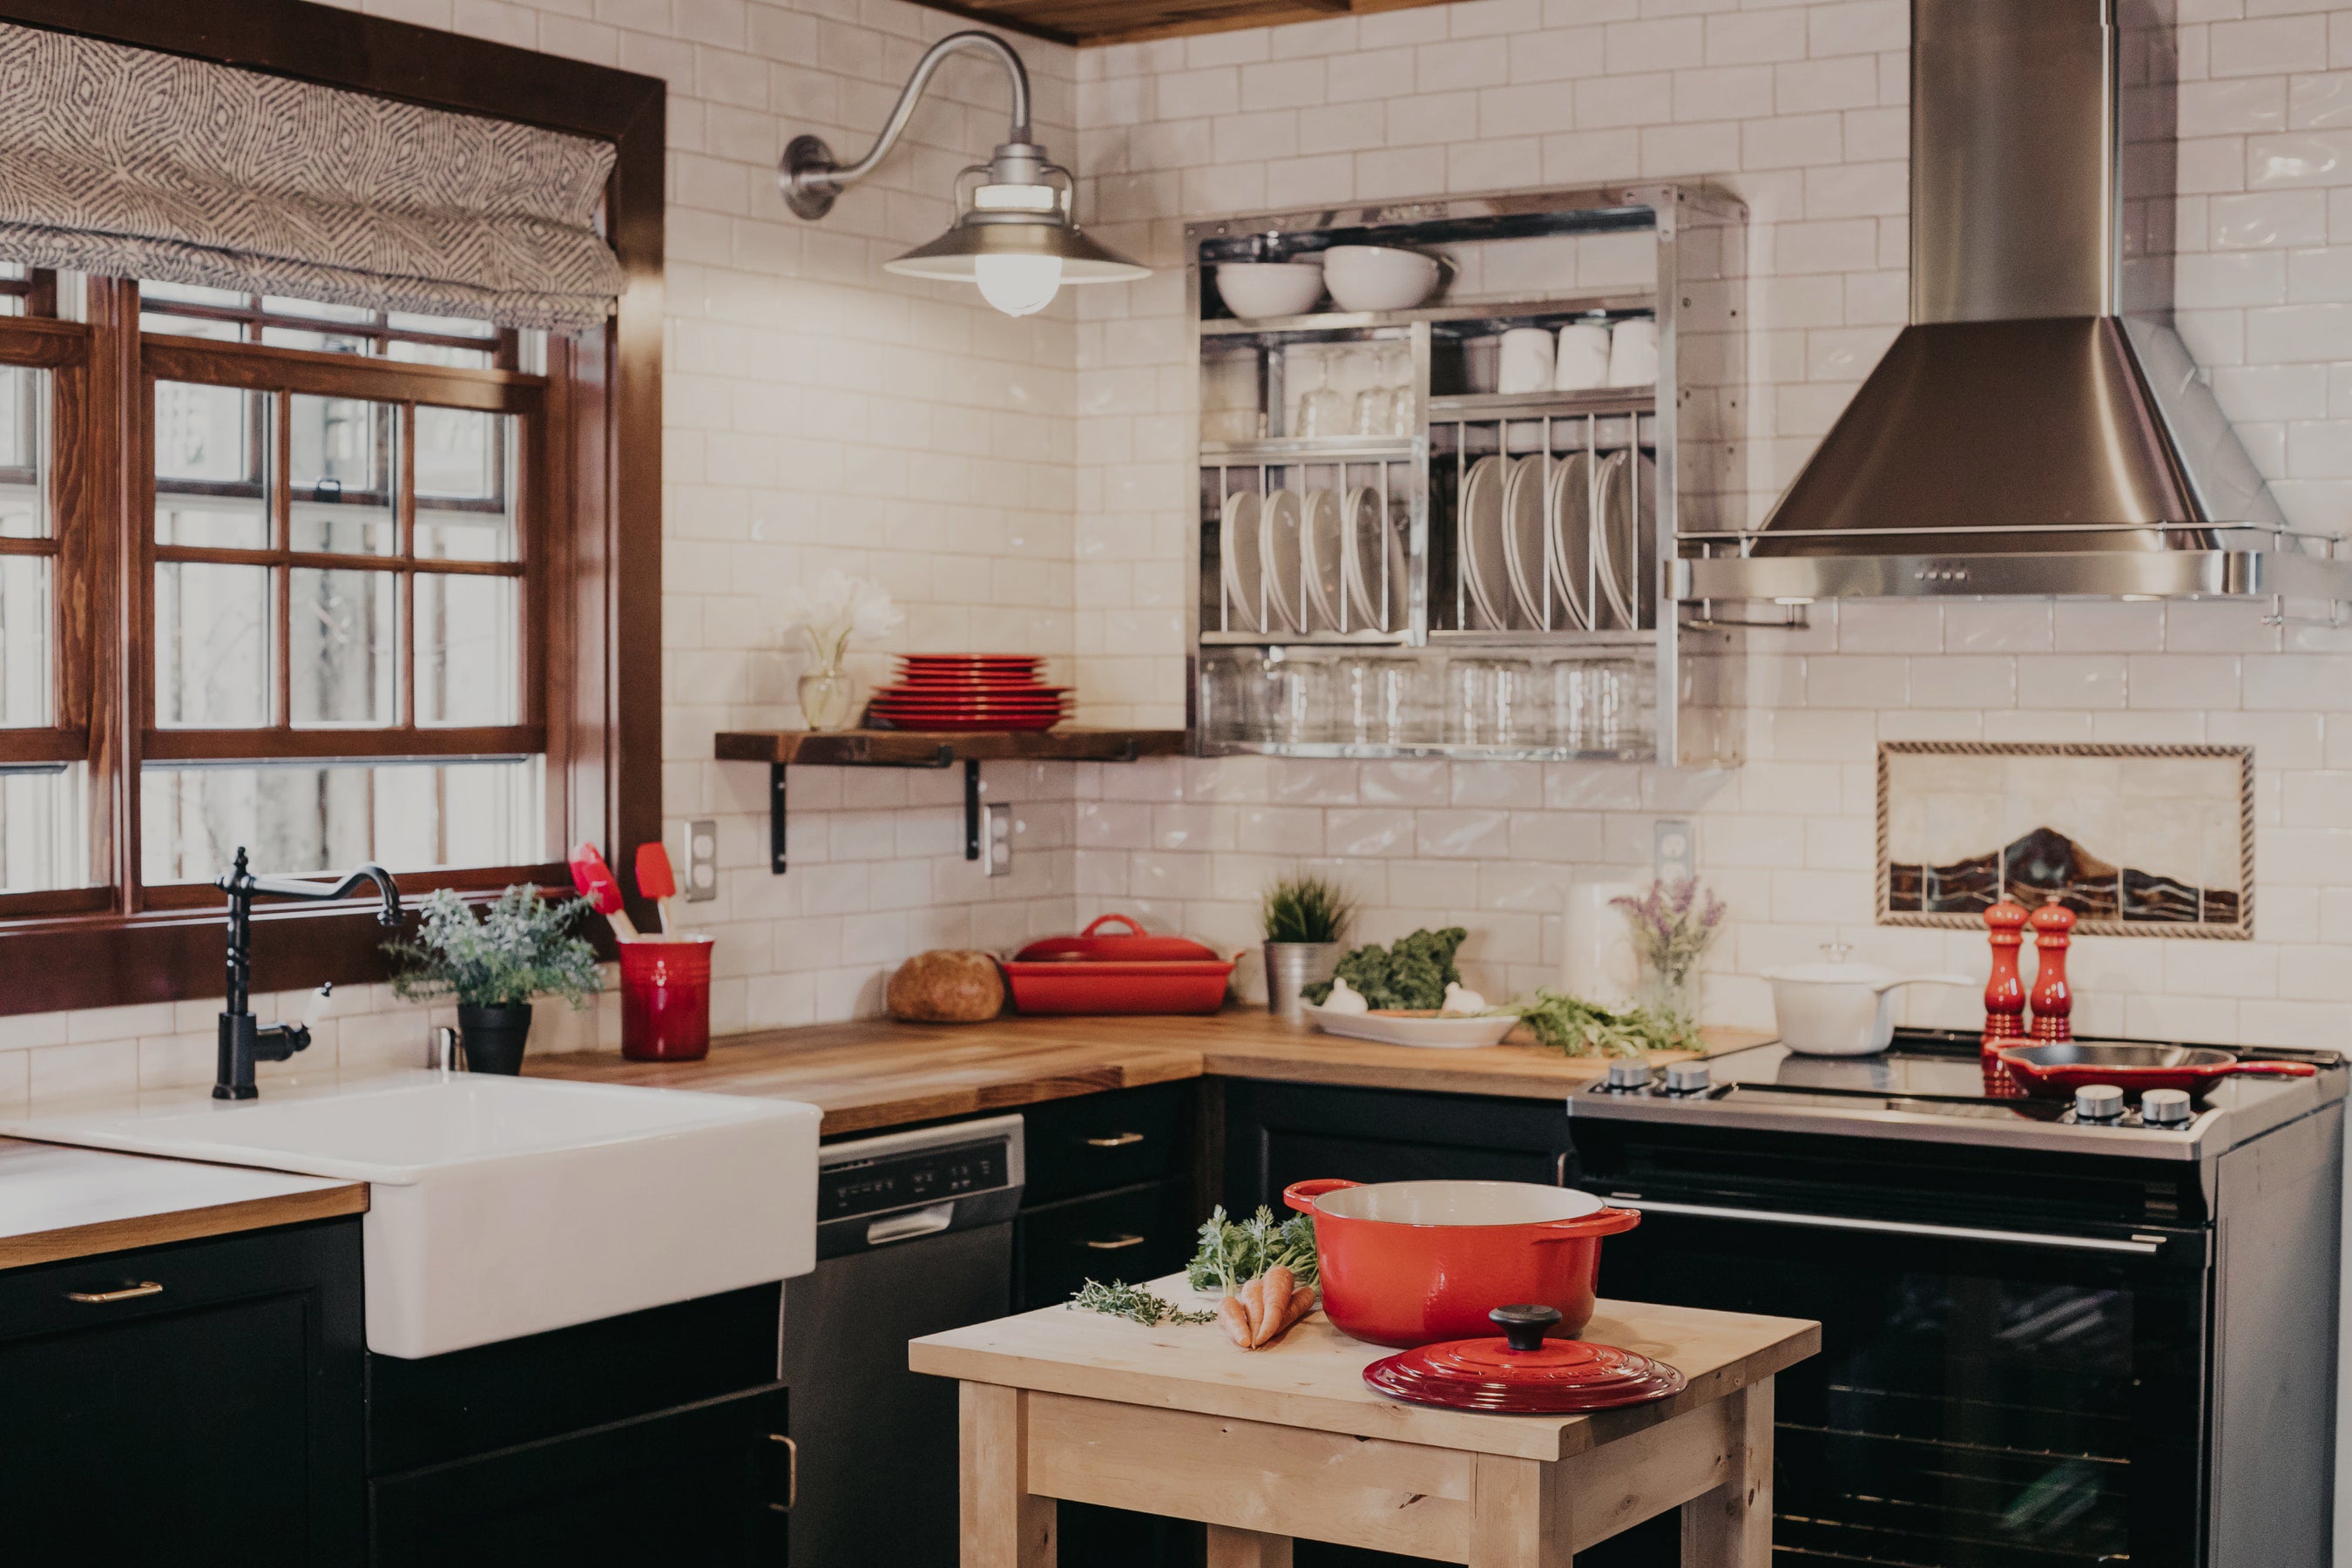 Kitchen Linens Set–Our Place